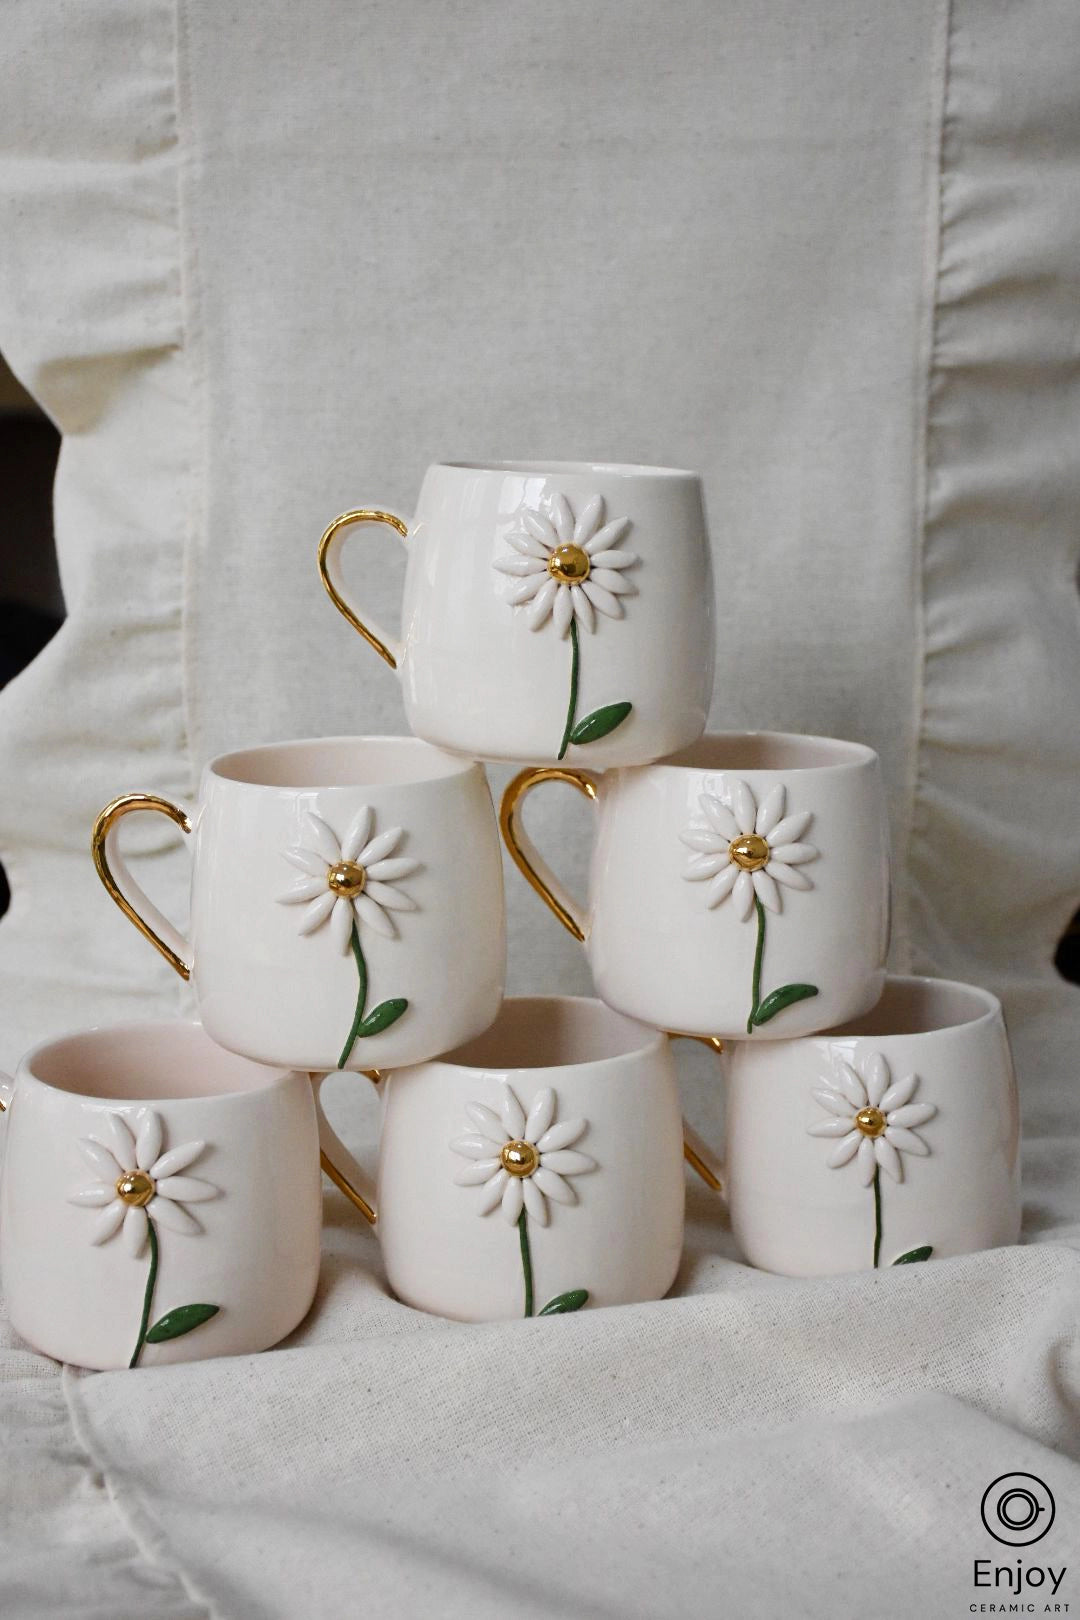 Handmade Daisy Mug With Gold Handle 10 oz, Daisy Gifts, Daisy Flower Cup, Daisy Flower Coffee Mug, Daisy Coffee Cup, Daisy Gifts Women